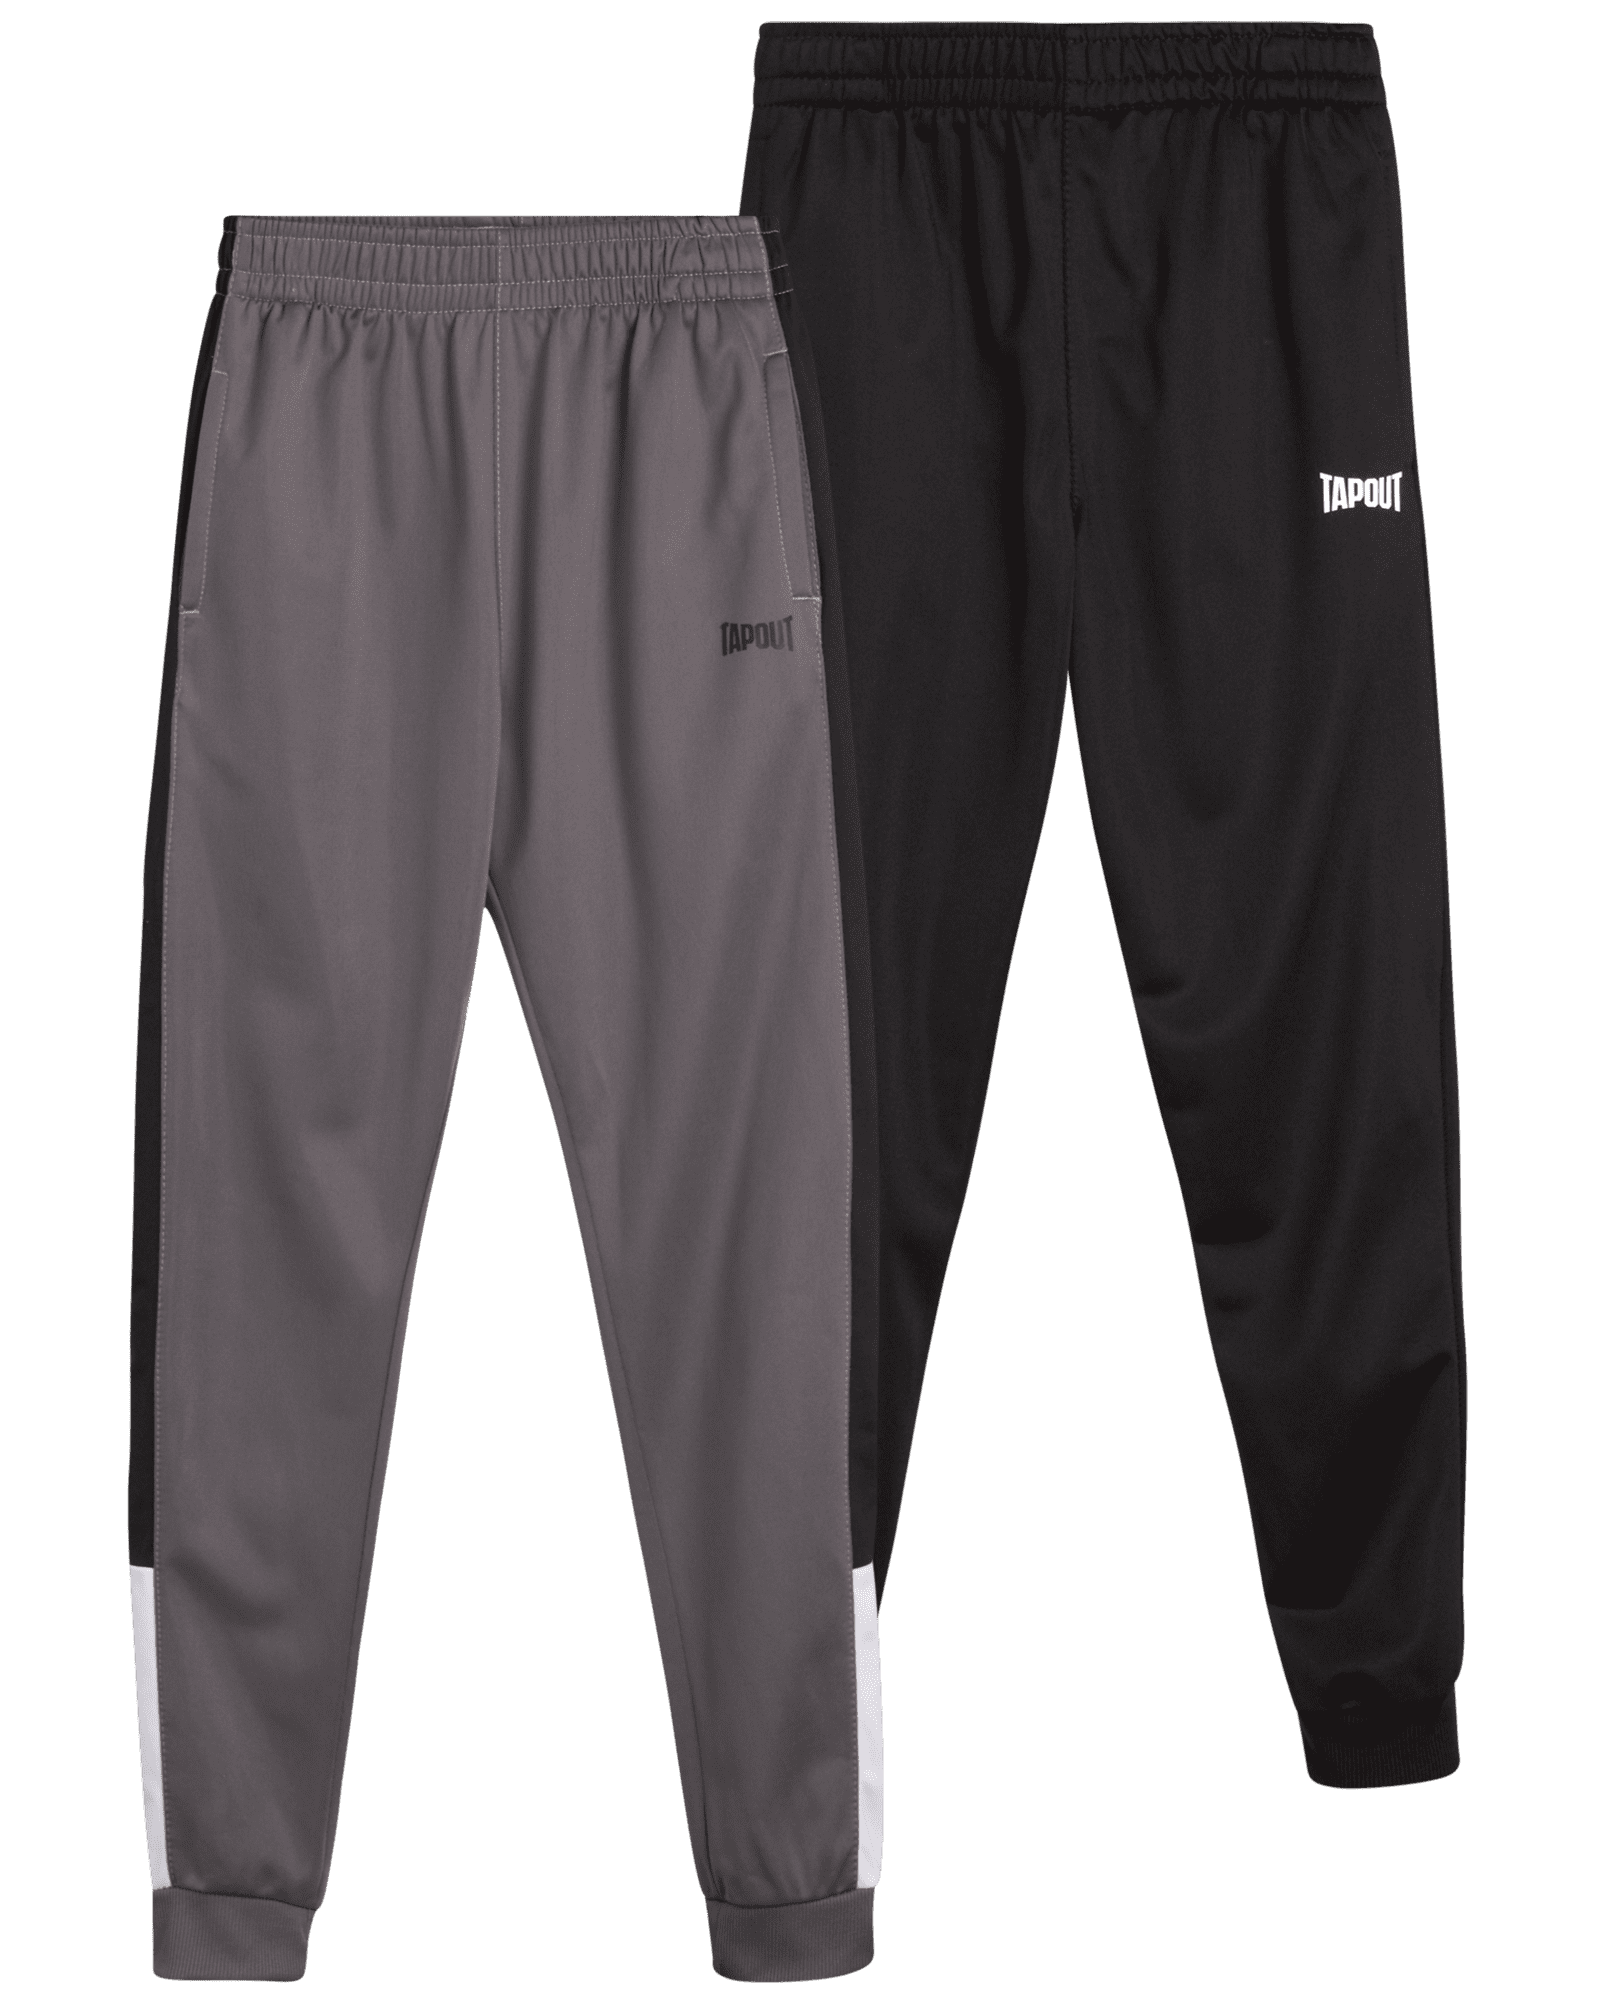 TAPOUT Boys’ Sweatpants – 2 Pack Active Tricot Jogger Pants (Size: 4-16 ...